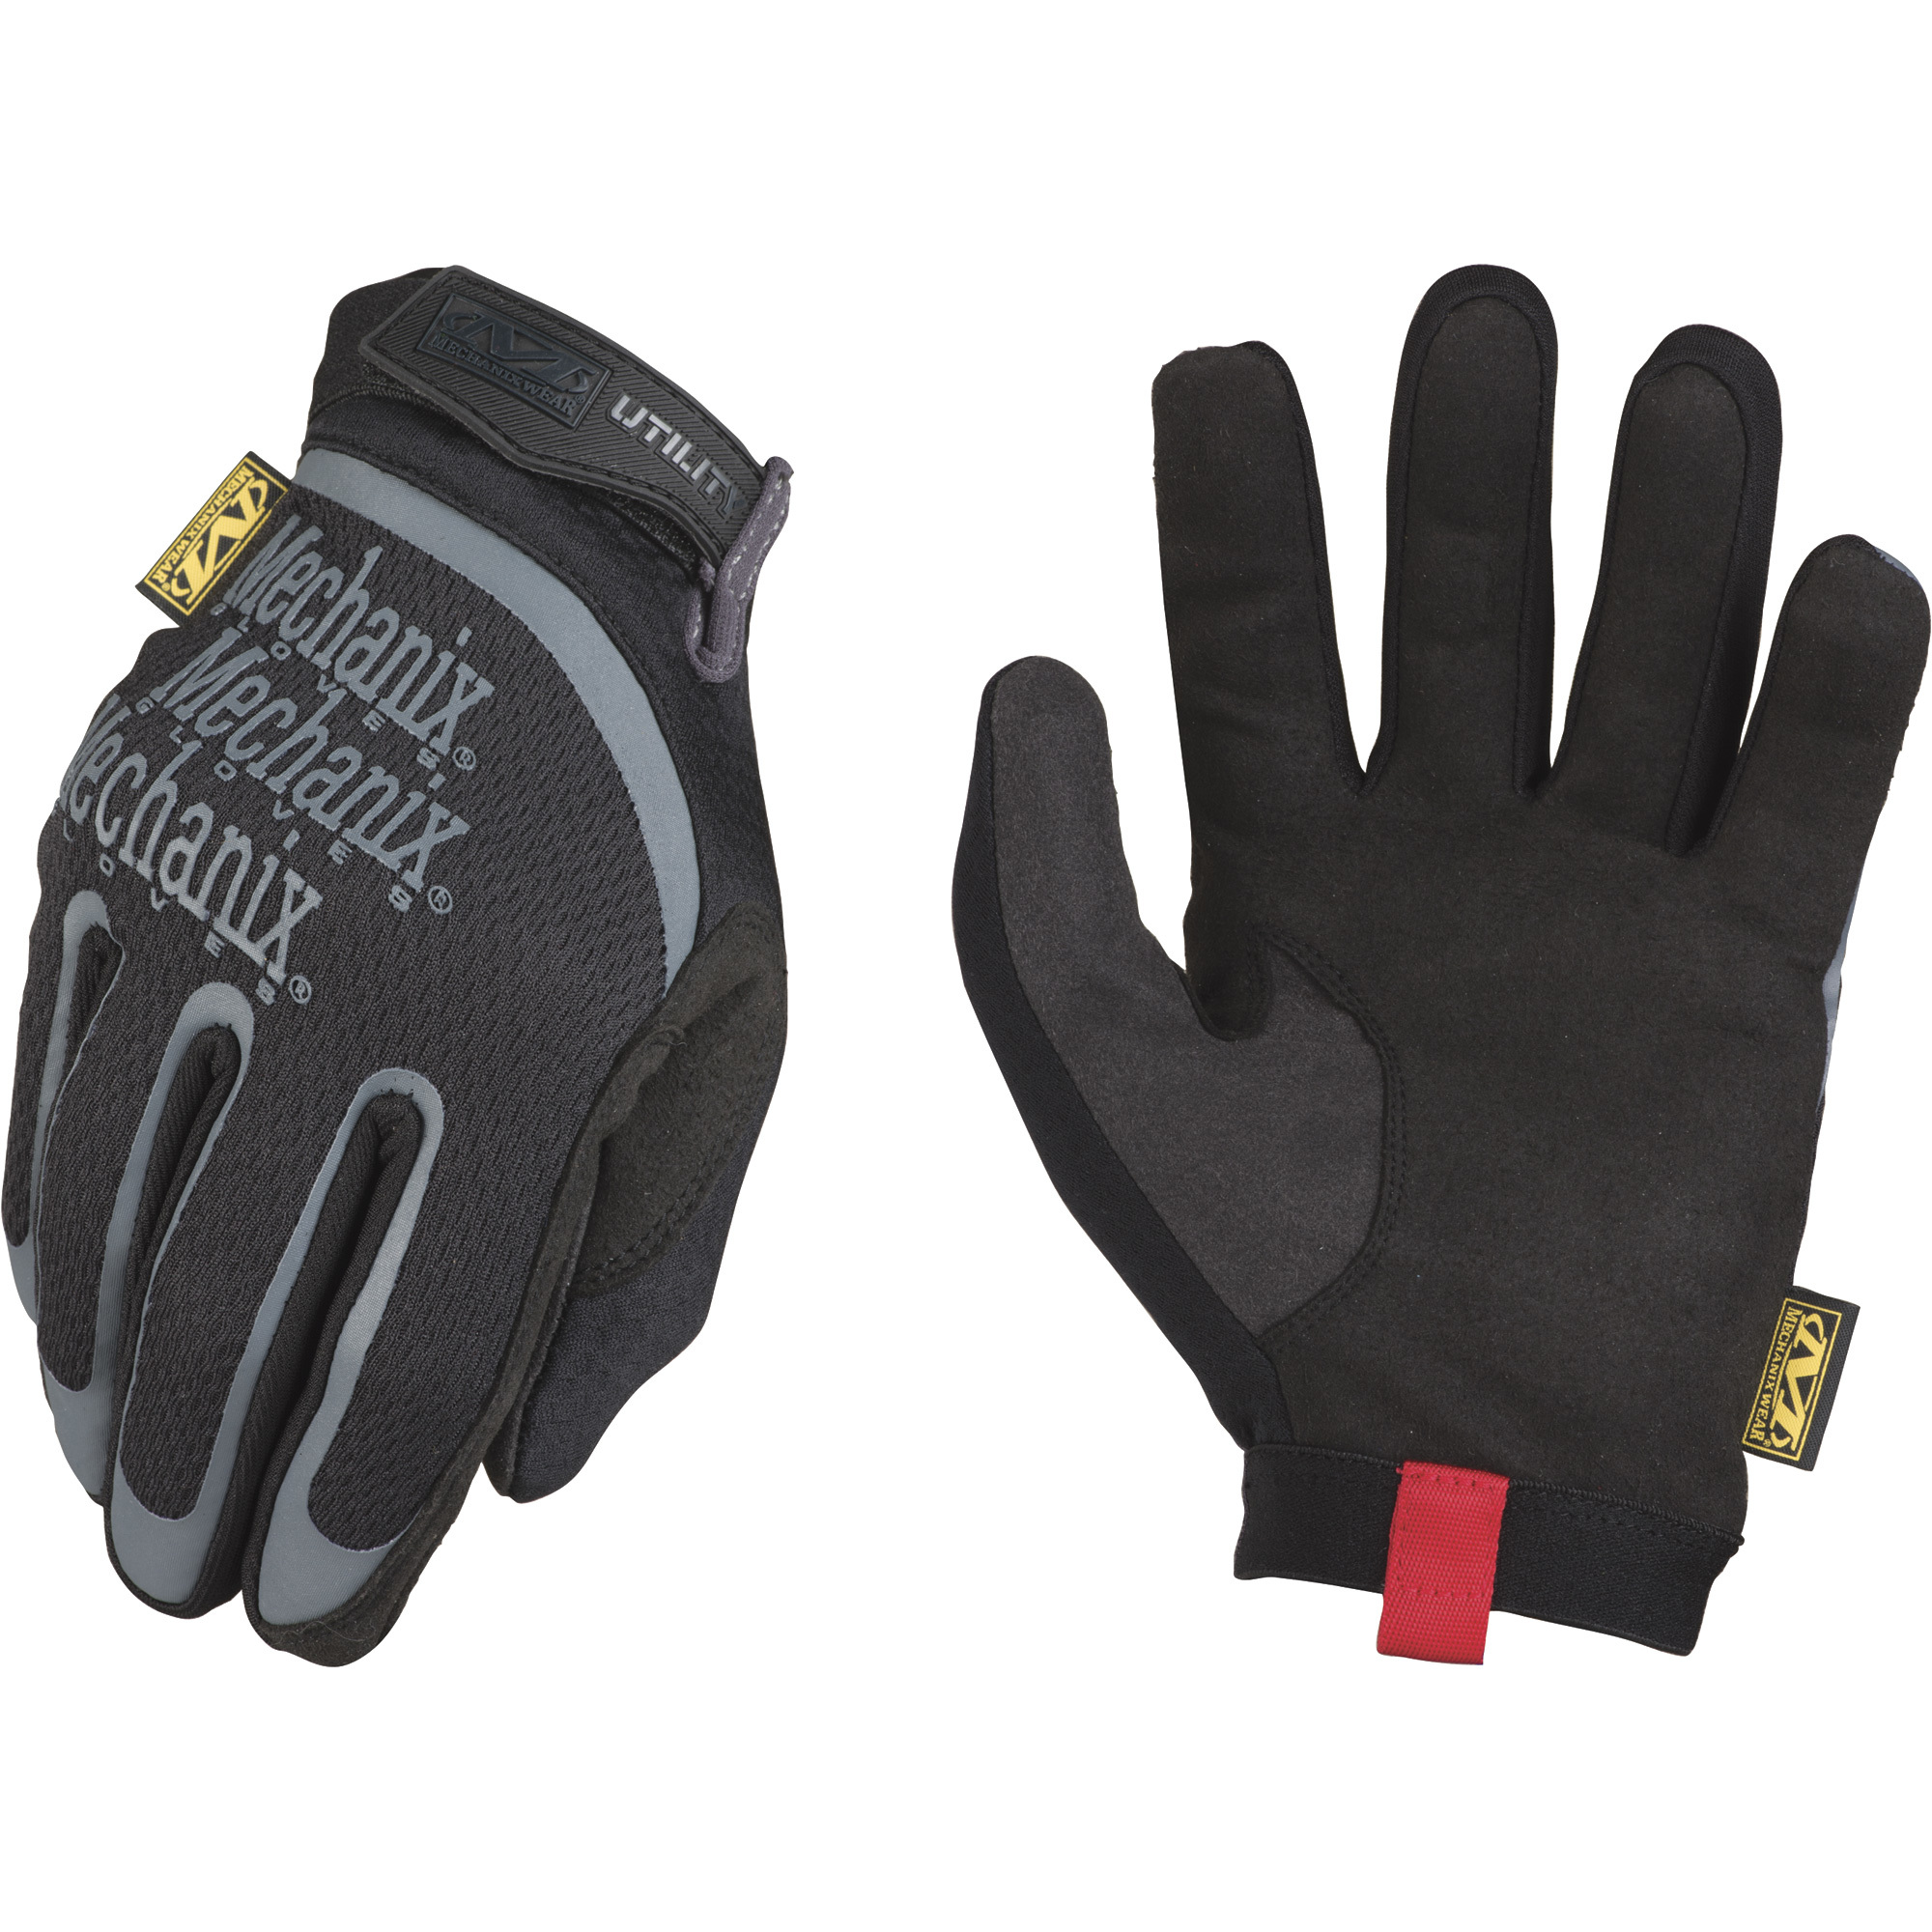 Mechanix Men's Wear Utility 1.5 Gloves - Black, 2XL, Model H15-05-012